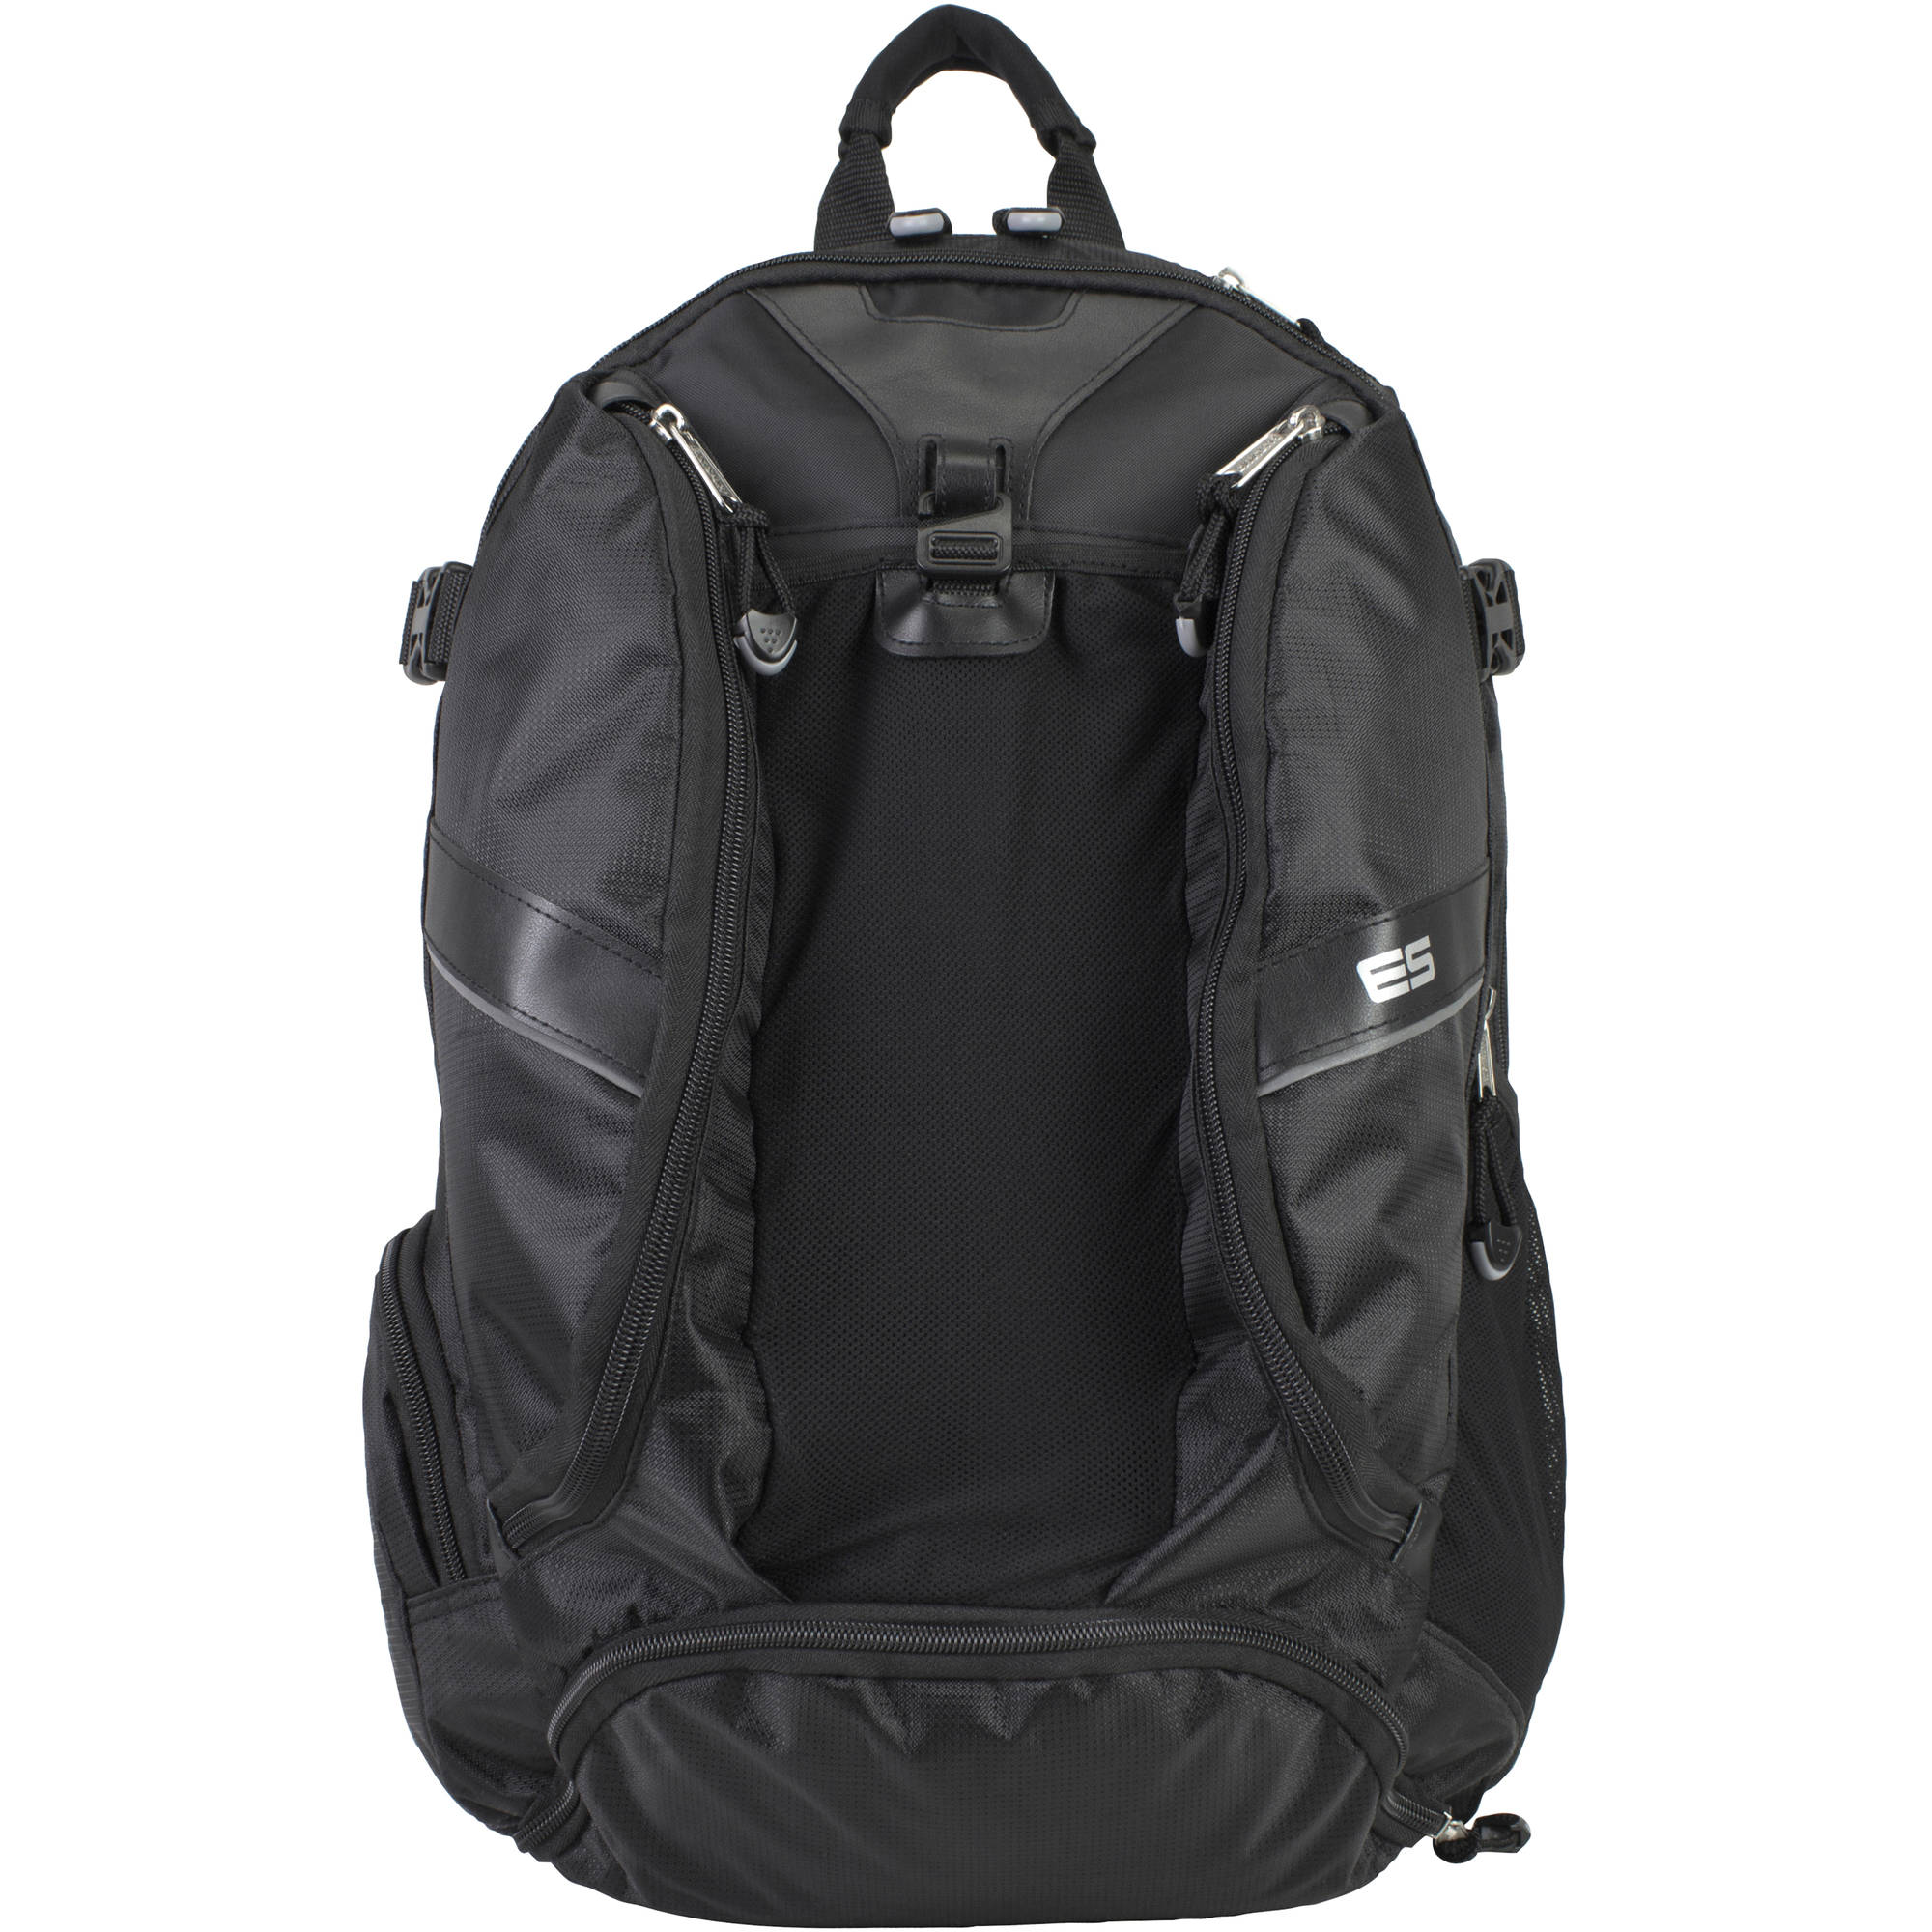 Laptop Backpack with Adjustable Padded Shoulder Straps - image 2 of 8